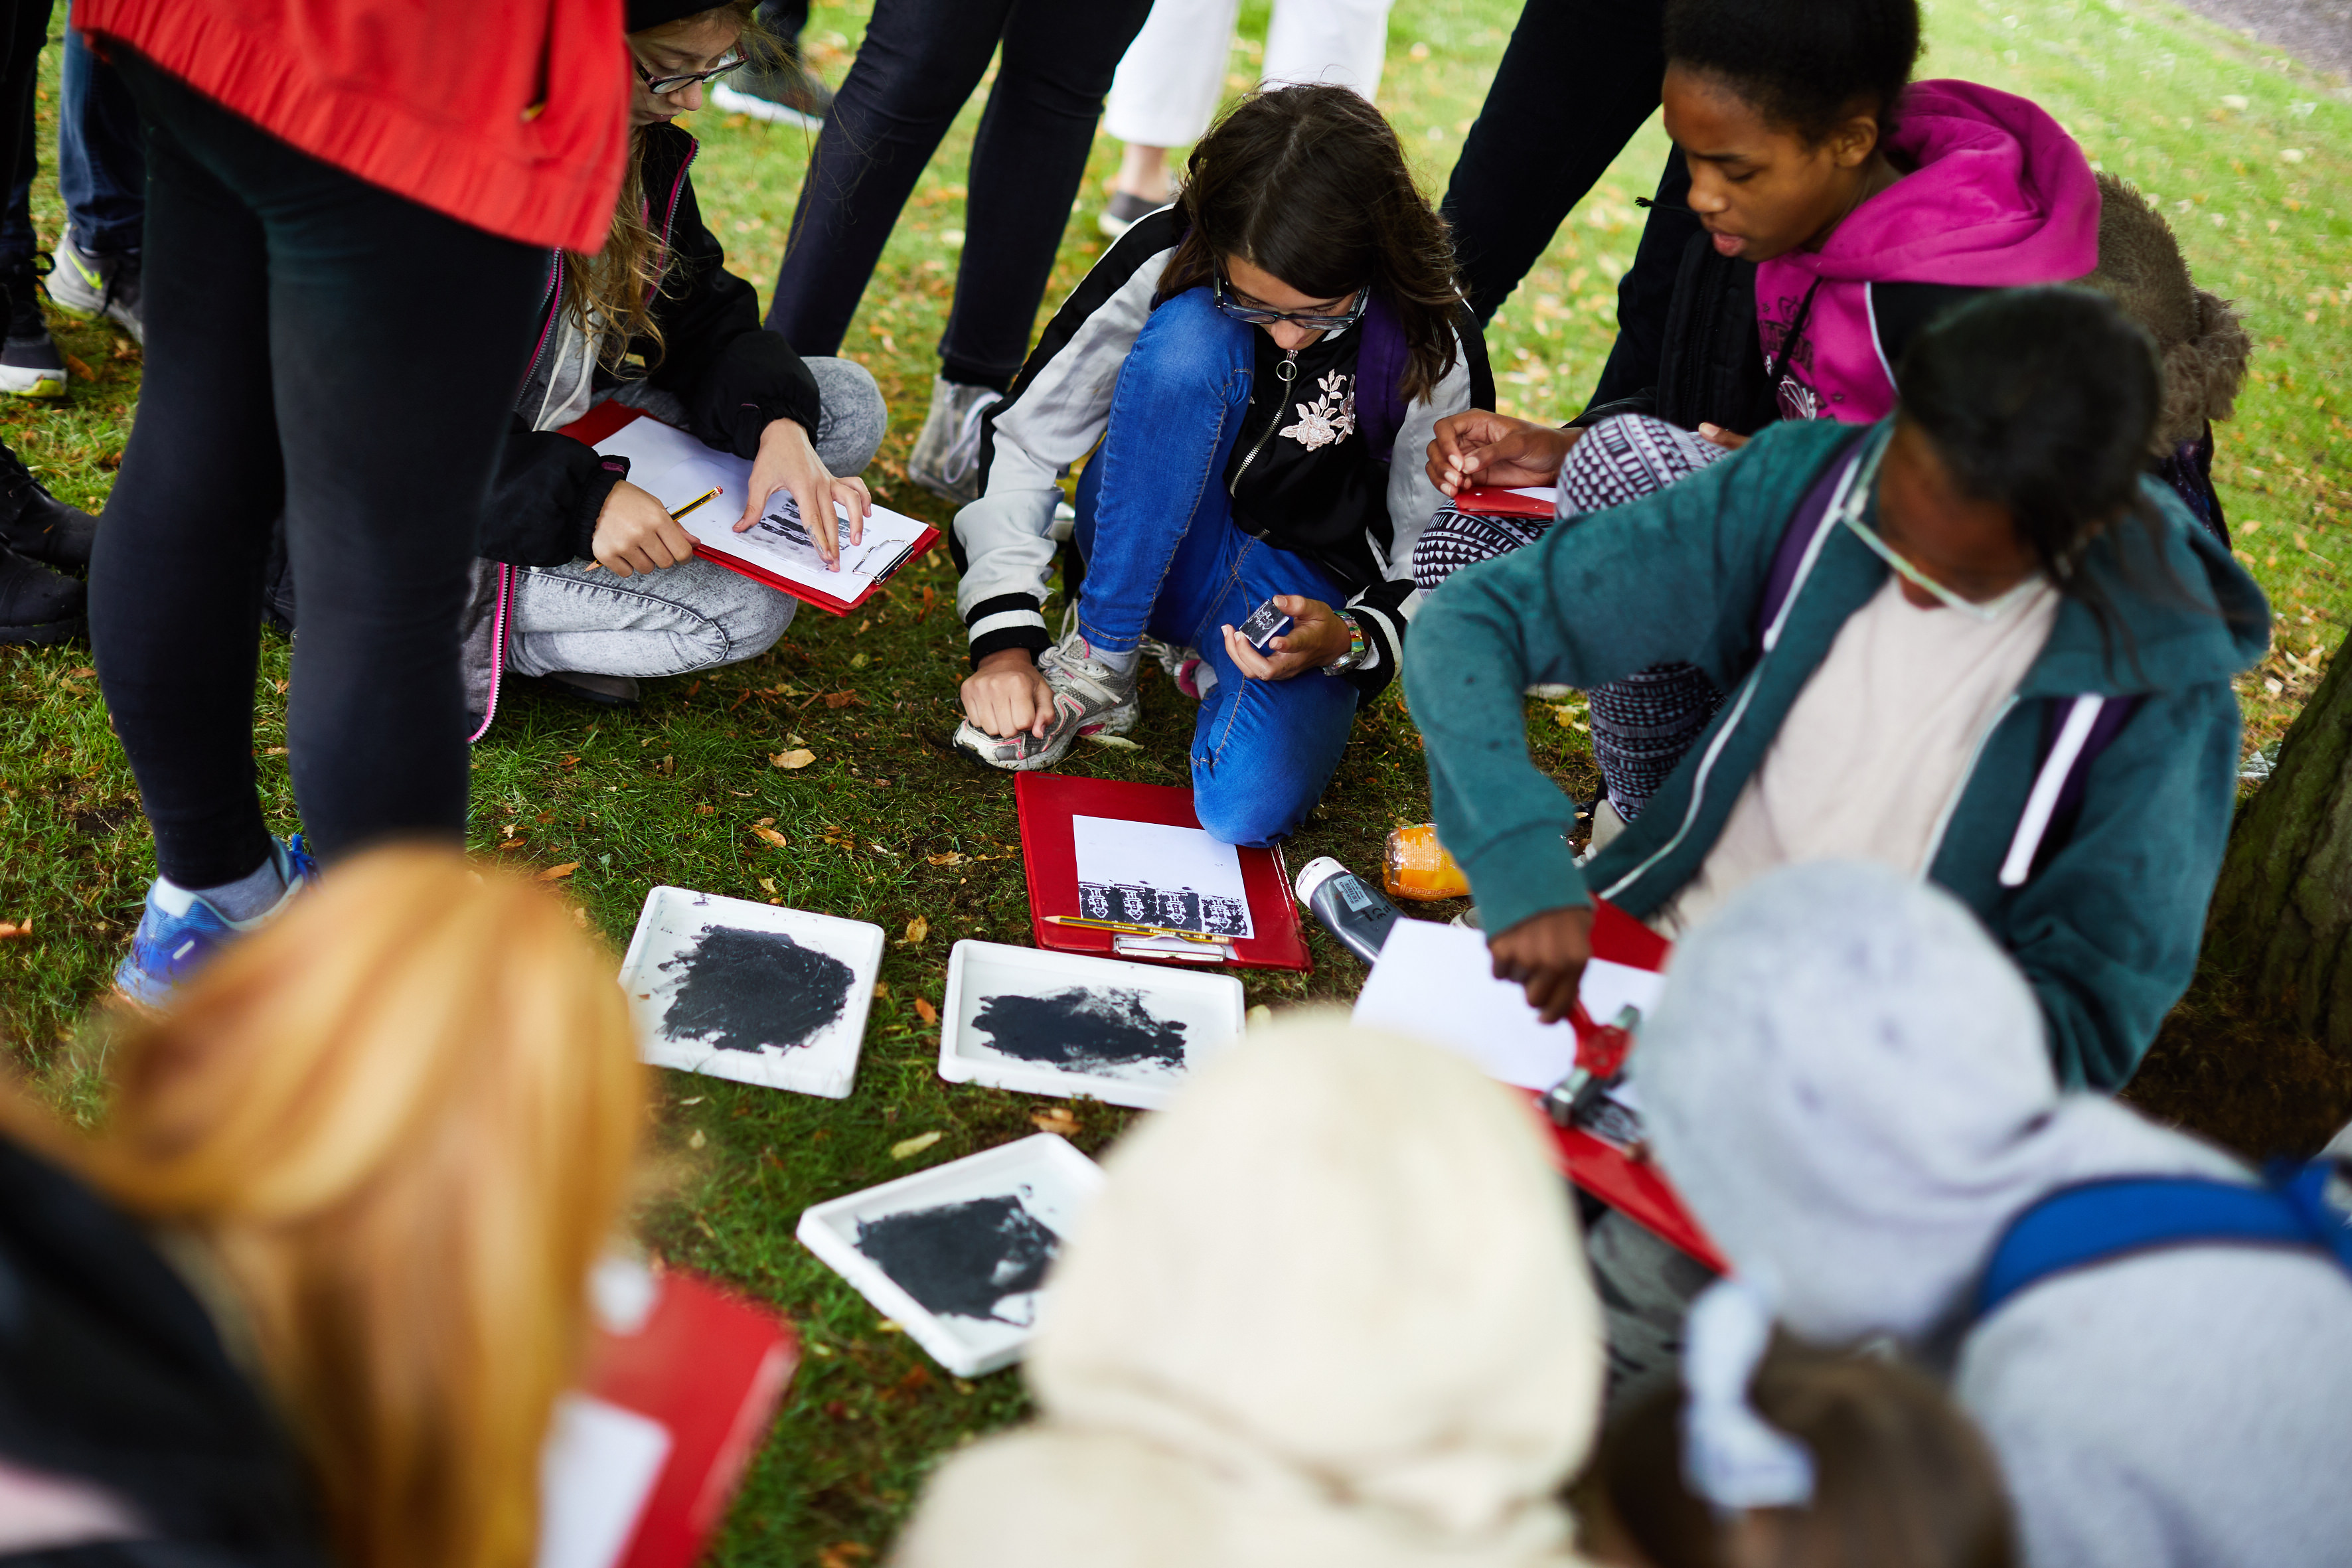 YSP School activities - School children drawing outdoors